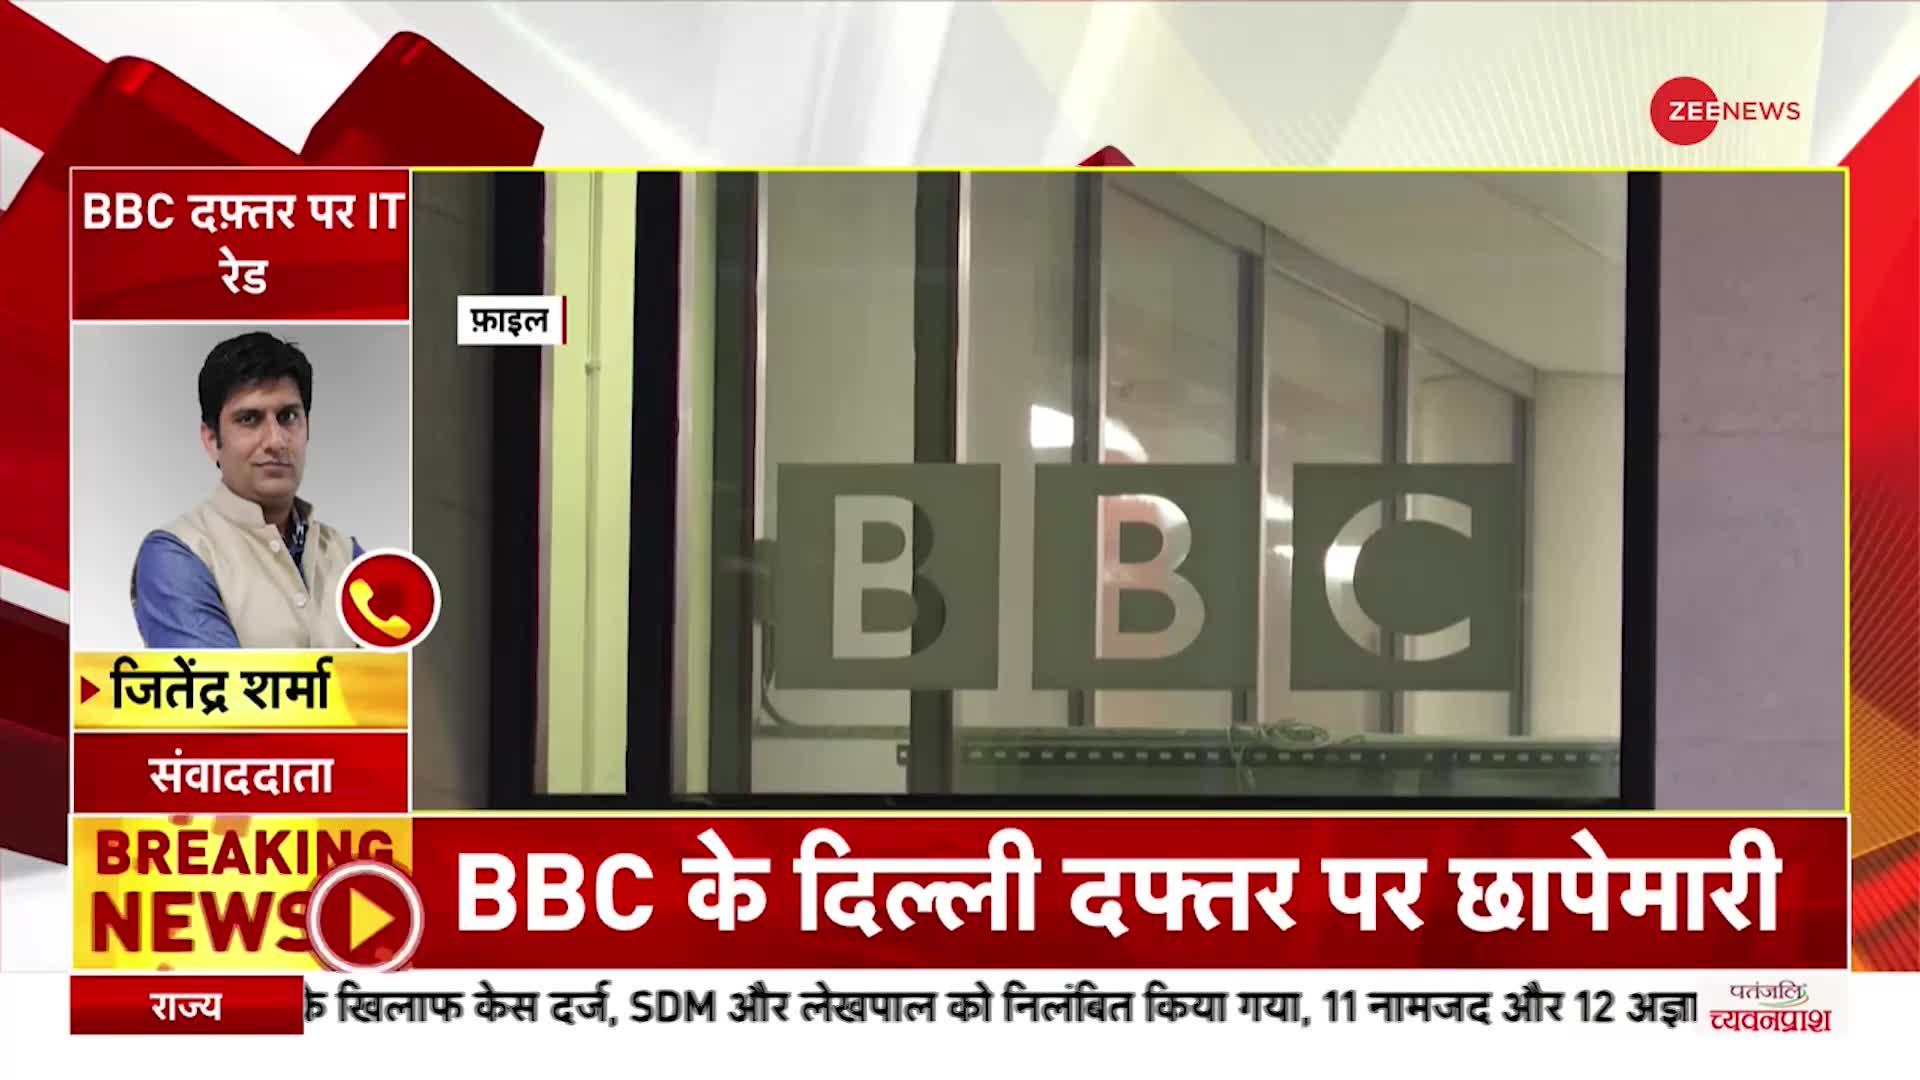 BBC IT Raid: दिल्ली में बीबीसी दफ्तर पर टैक्स चोरी के आरोप में आईटी विभाग की छापेमारी- सूत्र